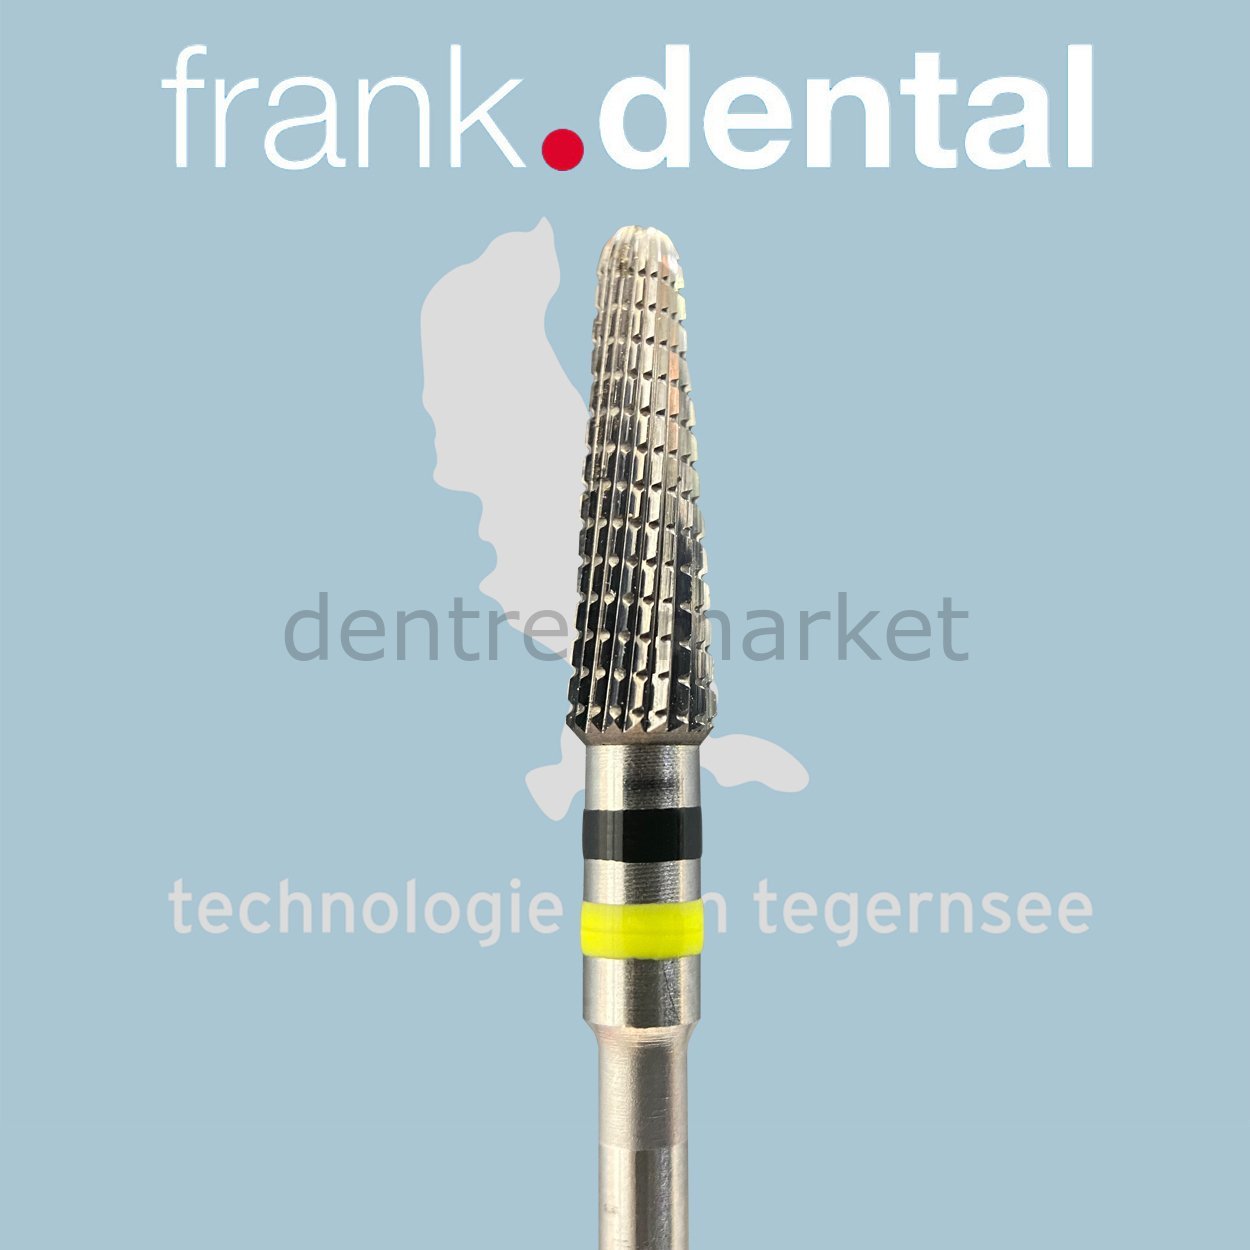 DentrealStore - Frank Dental Tungsten Carpide Monster Hard Burs - 79KFQ